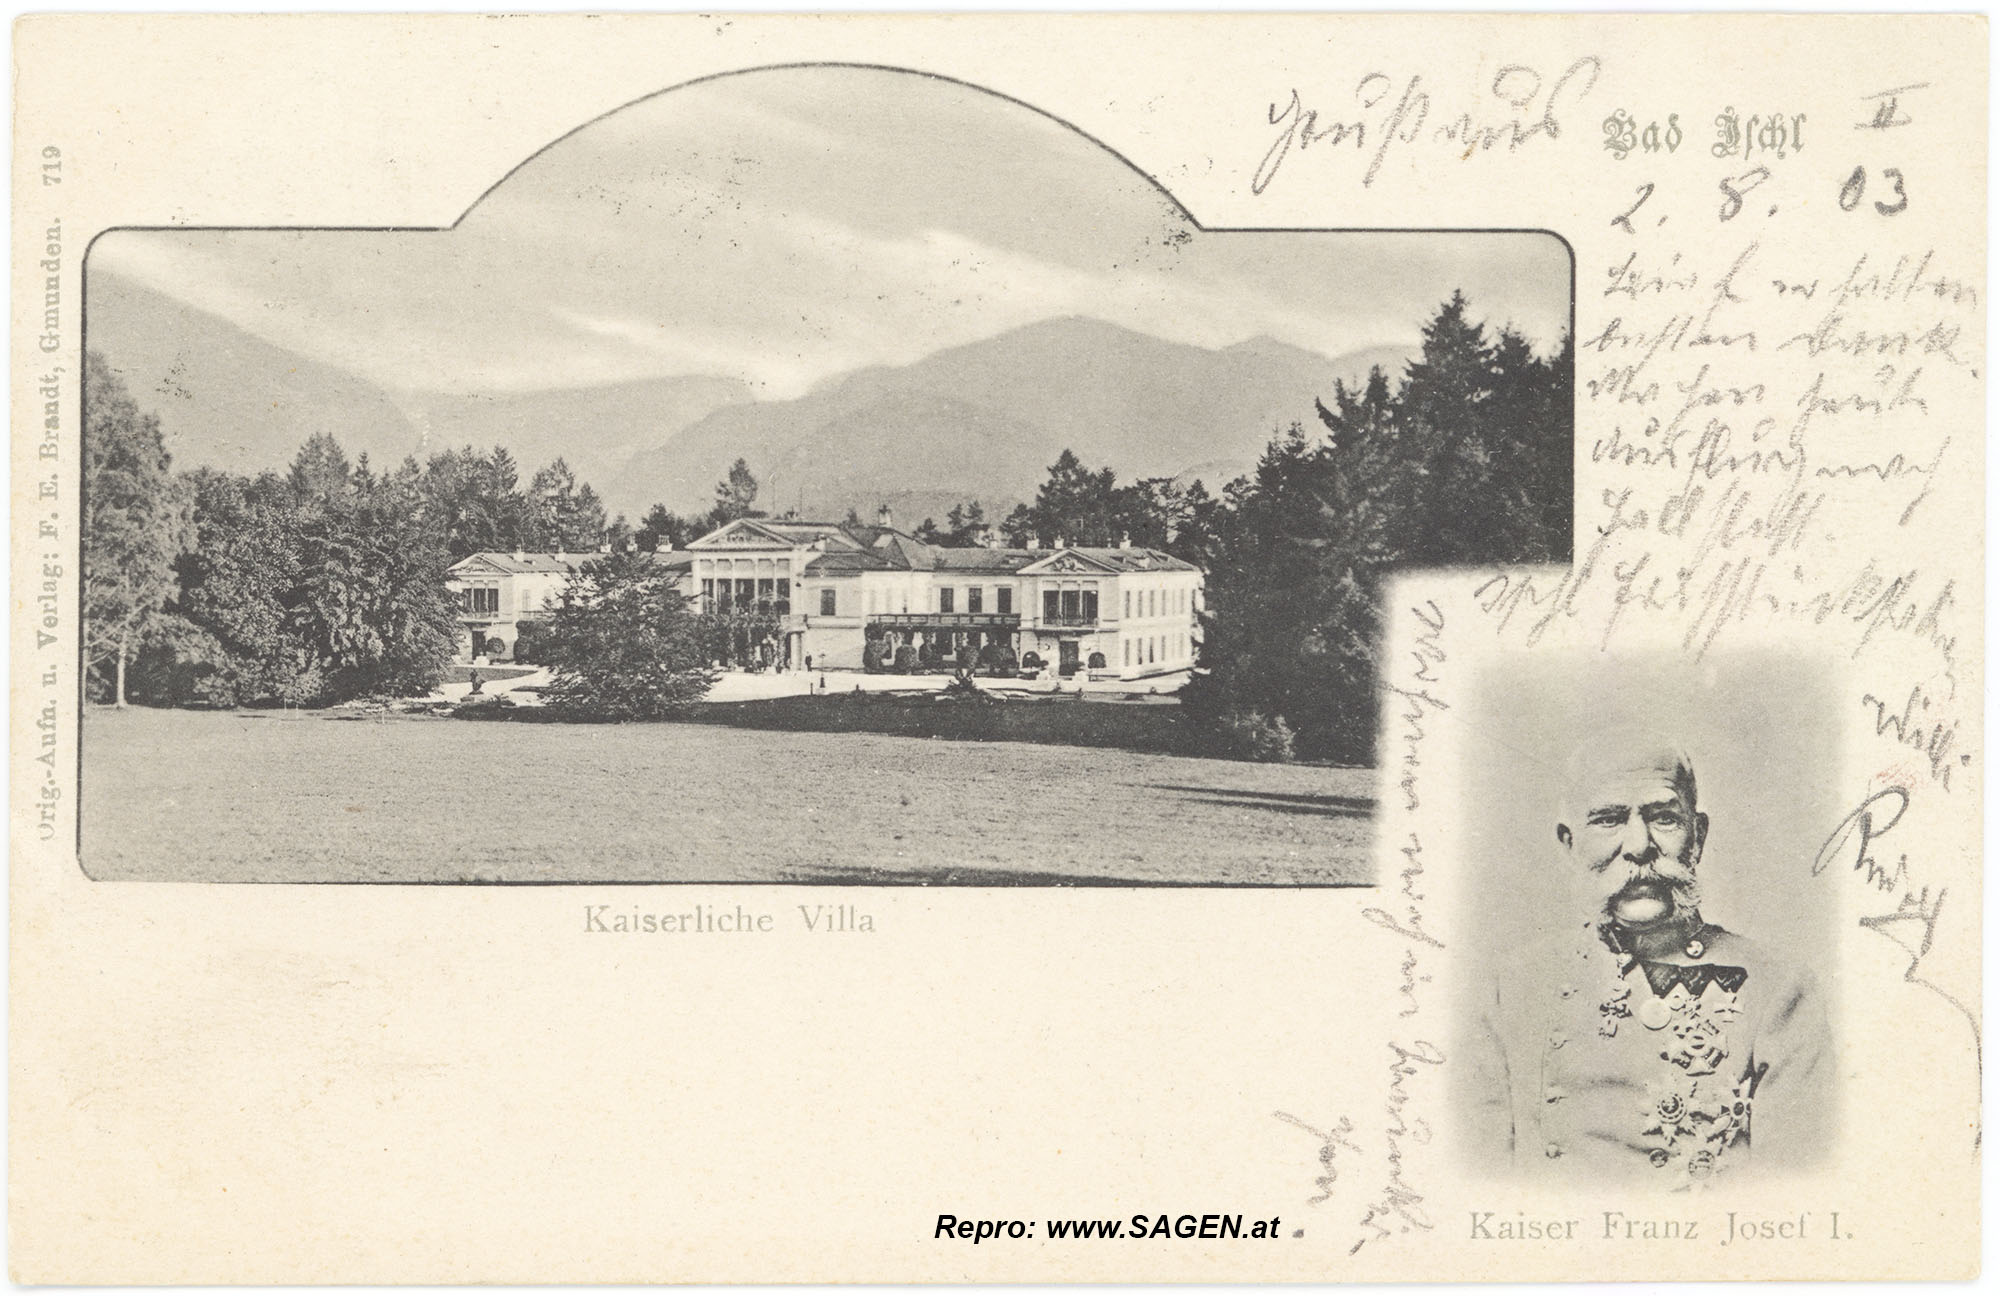 Bad Ischl Kaiserliche Villa und Kaiser Franz Josef I., 1903